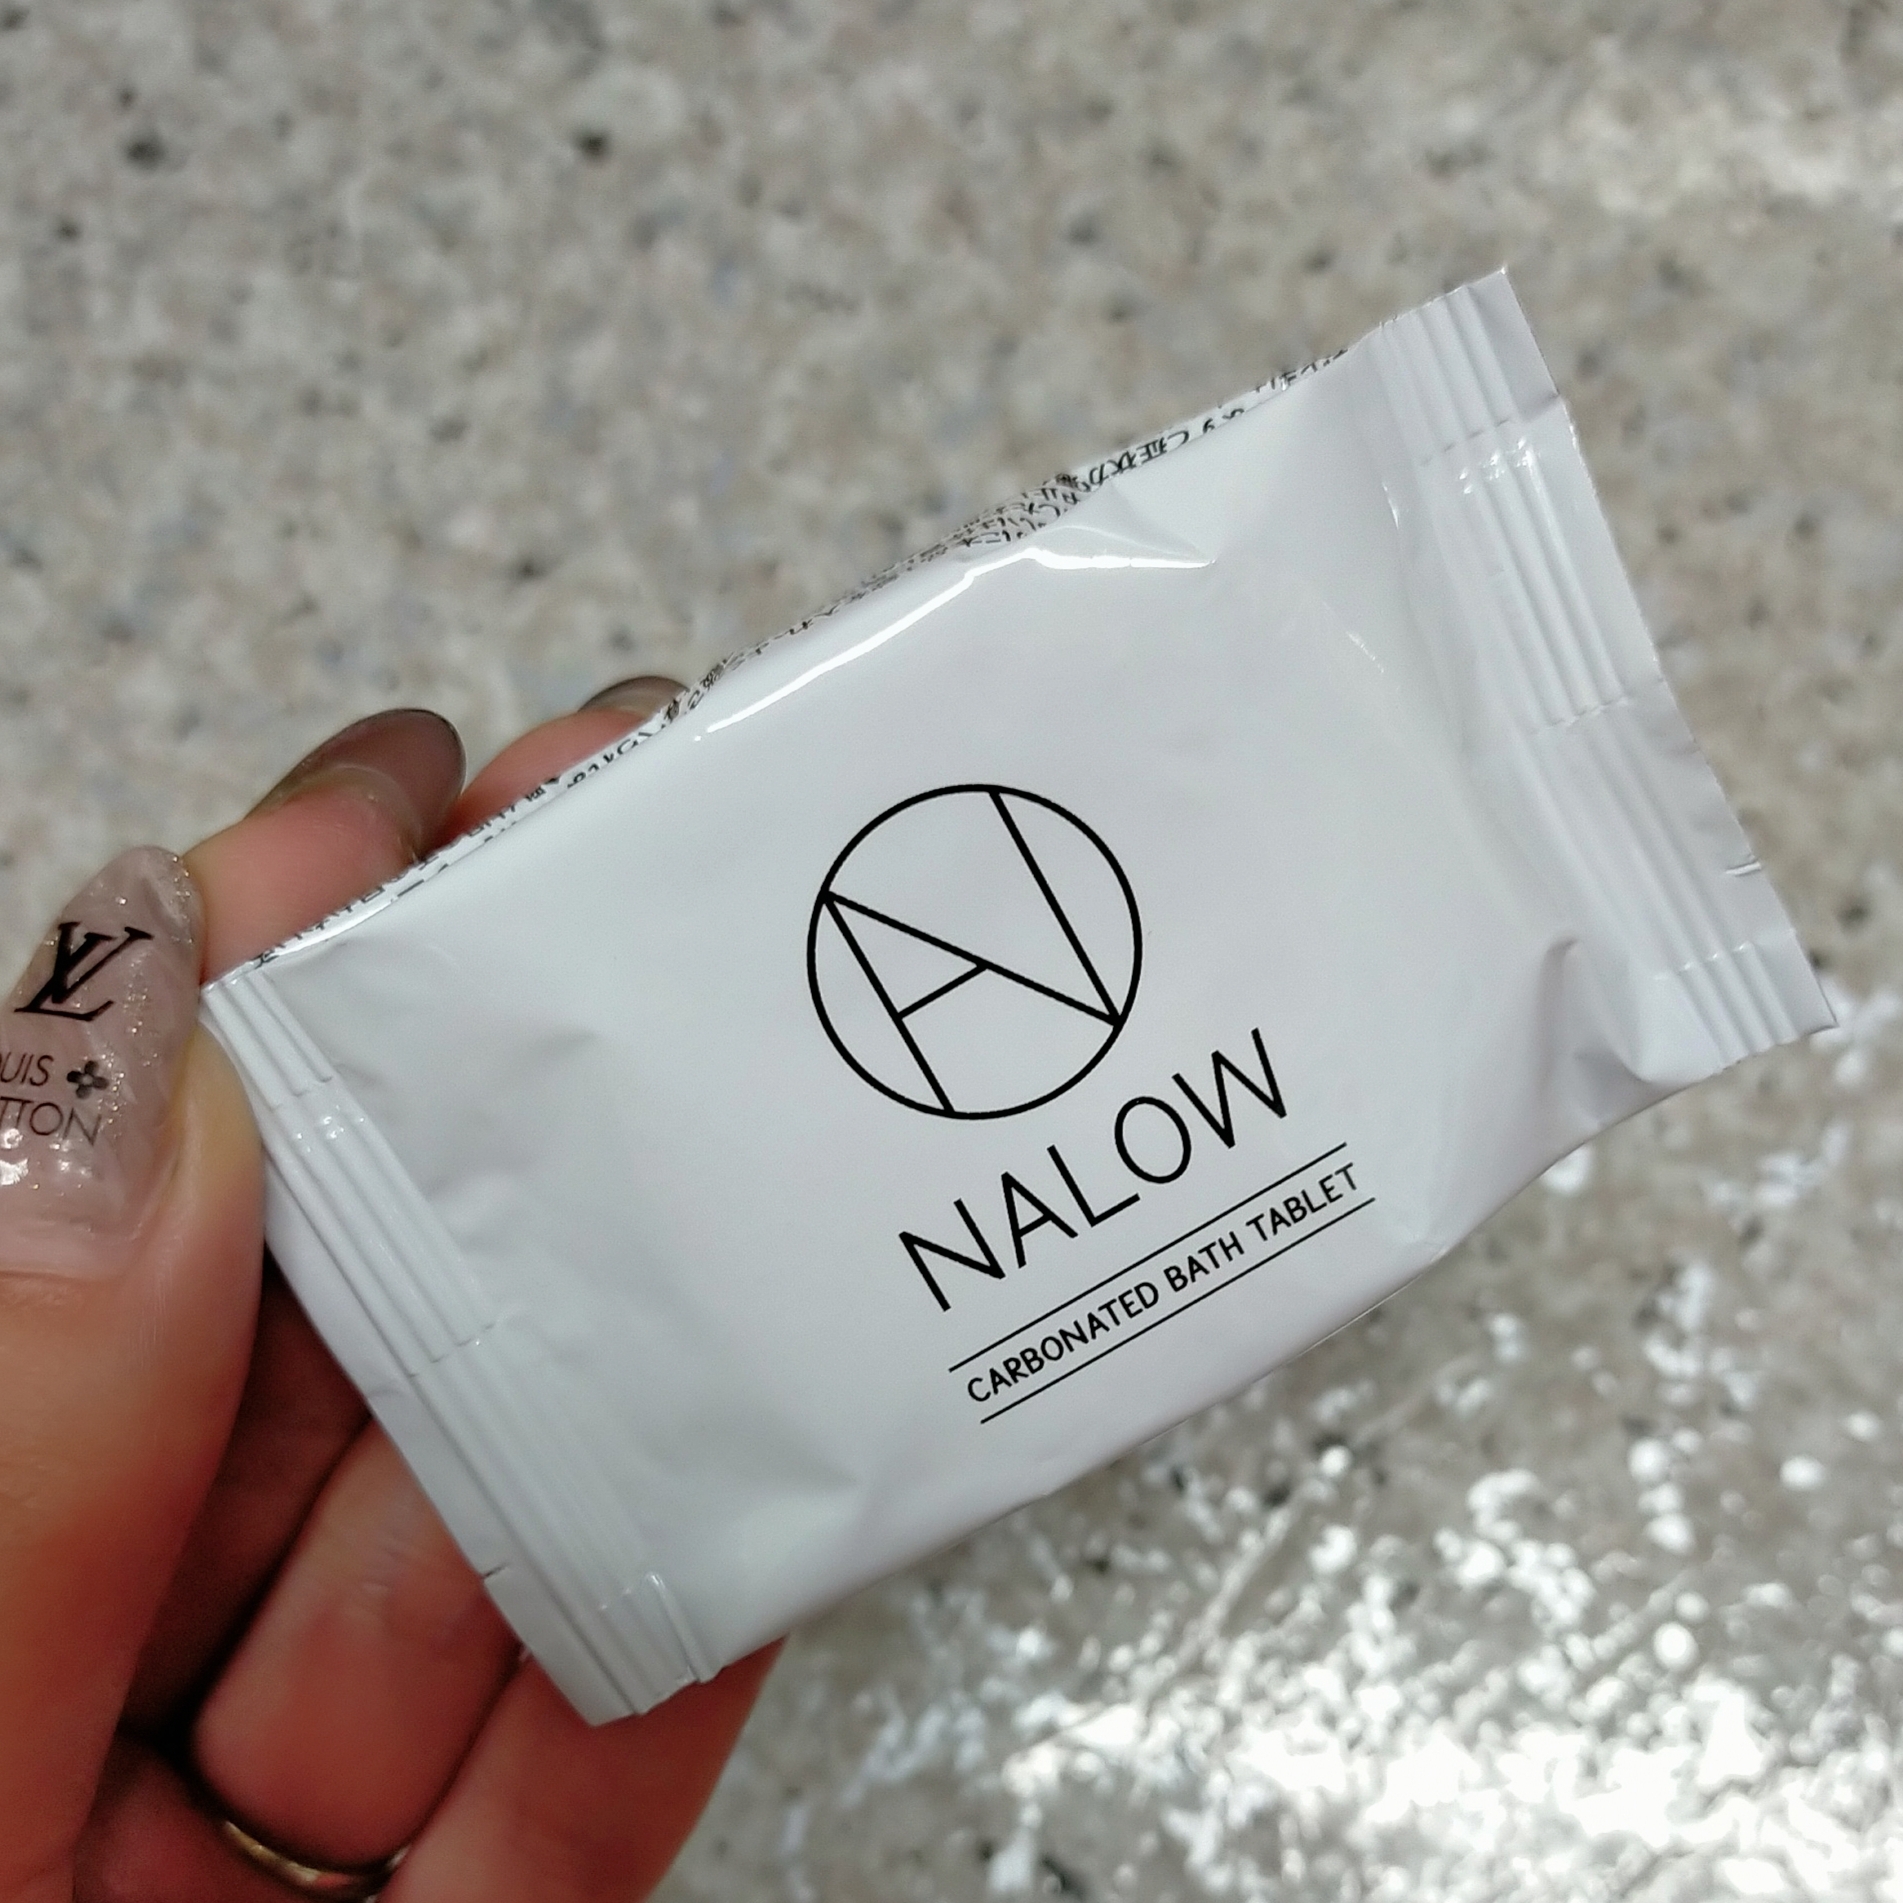 NALOW(ナロウ) 炭酸ソルト入浴料の良い点・メリットに関するみこさんの口コミ画像1